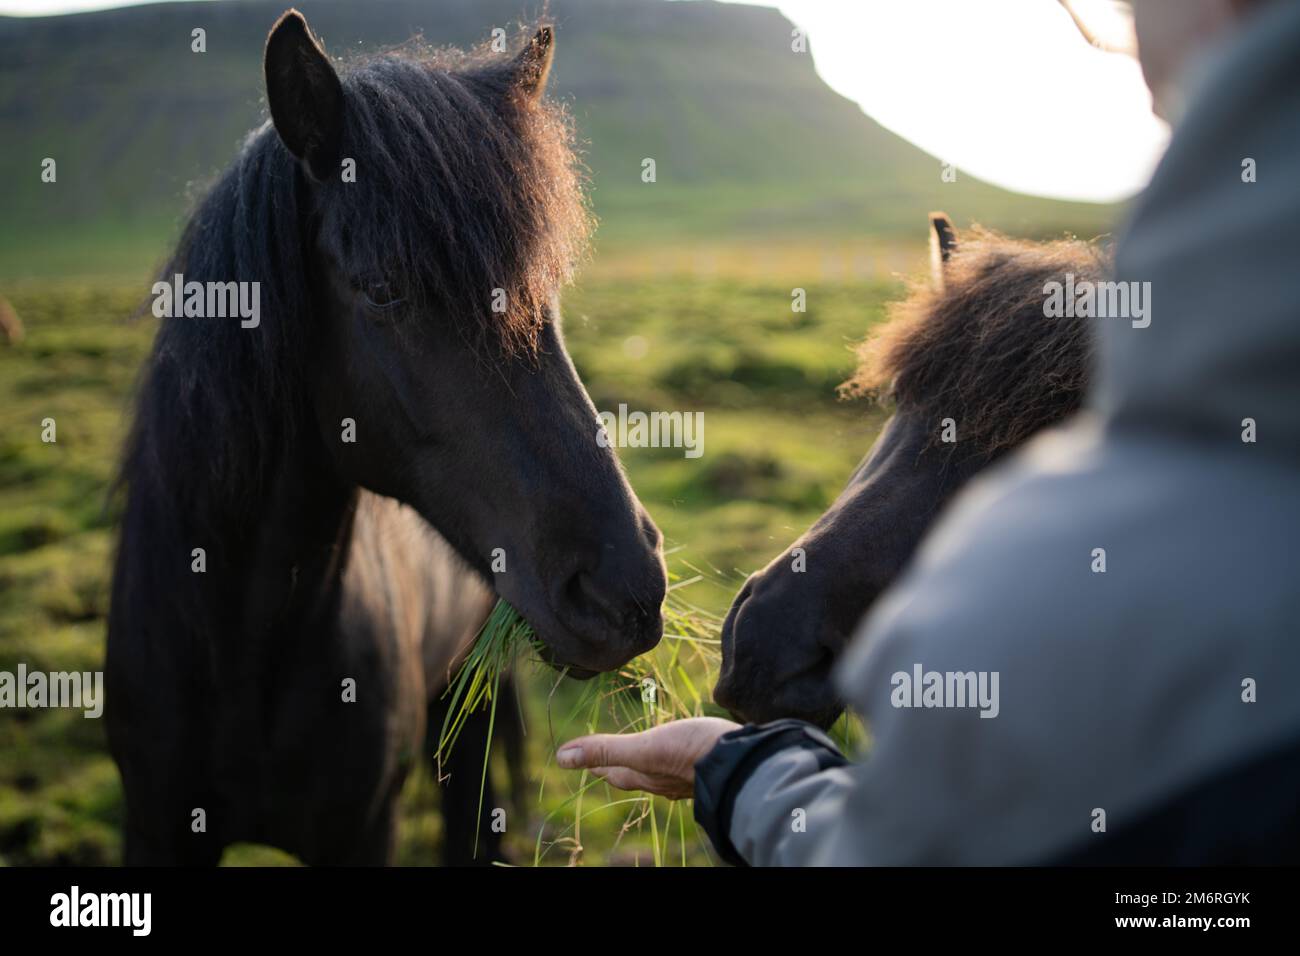 Alimentazione di cavalli islandesi al pascolo al Berg Horse Farm in Islanda Foto Stock